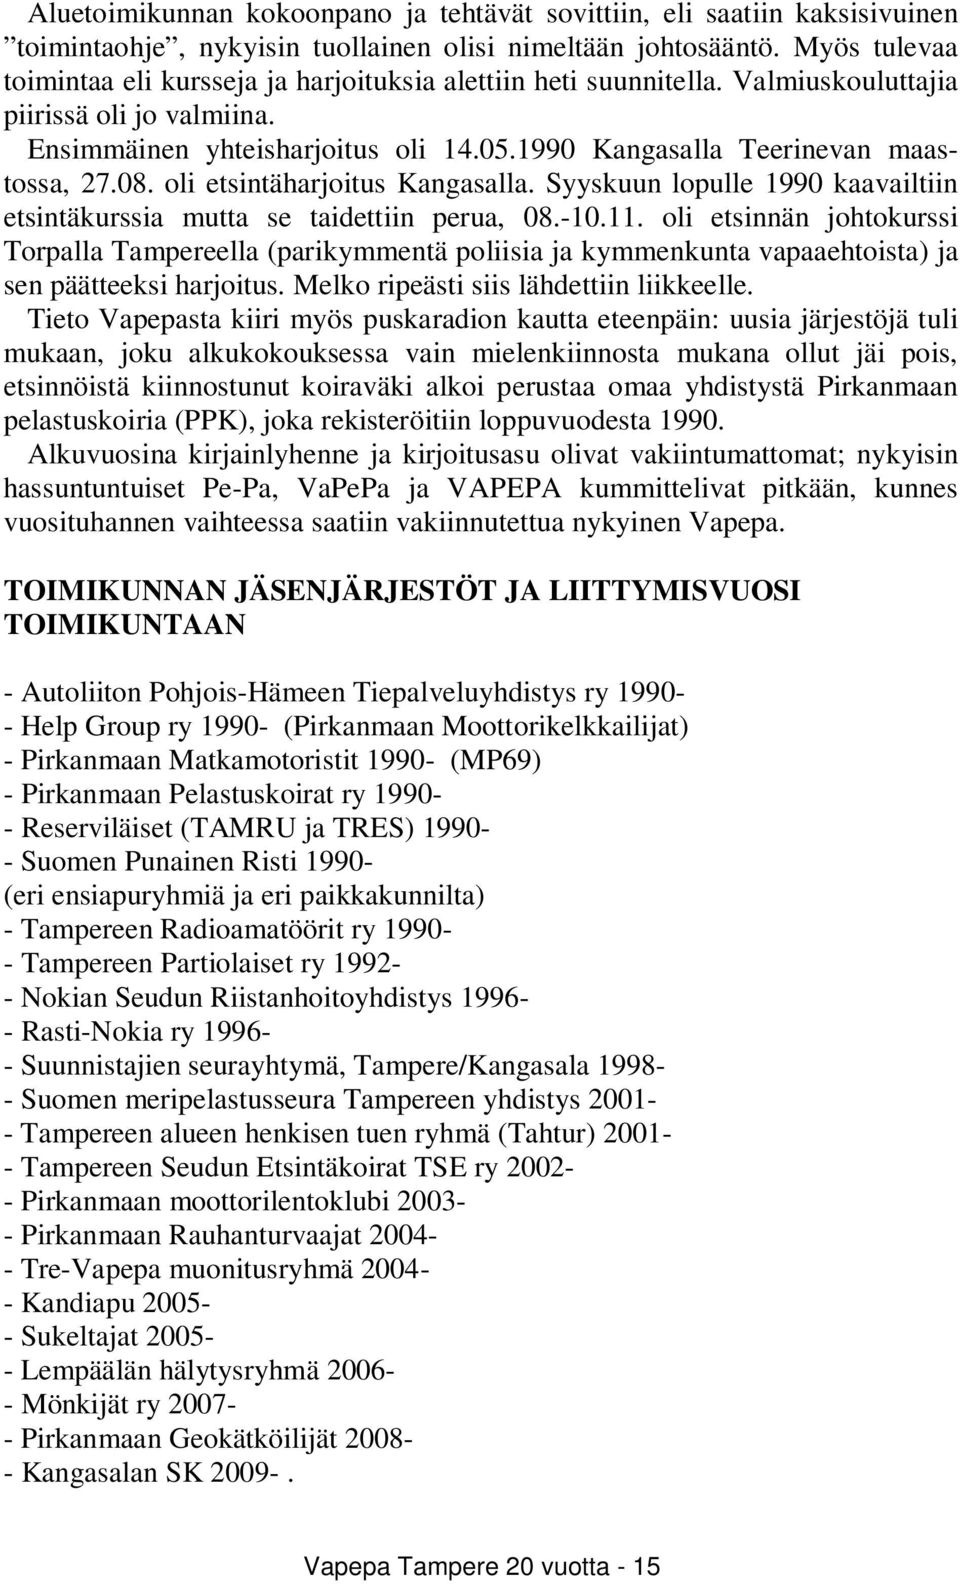 1990 Kangasalla Teerinevan maastossa, 27.08. oli etsintäharjoitus Kangasalla. Syyskuun lopulle 1990 kaavailtiin etsintäkurssia mutta se taidettiin perua, 08.-10.11.